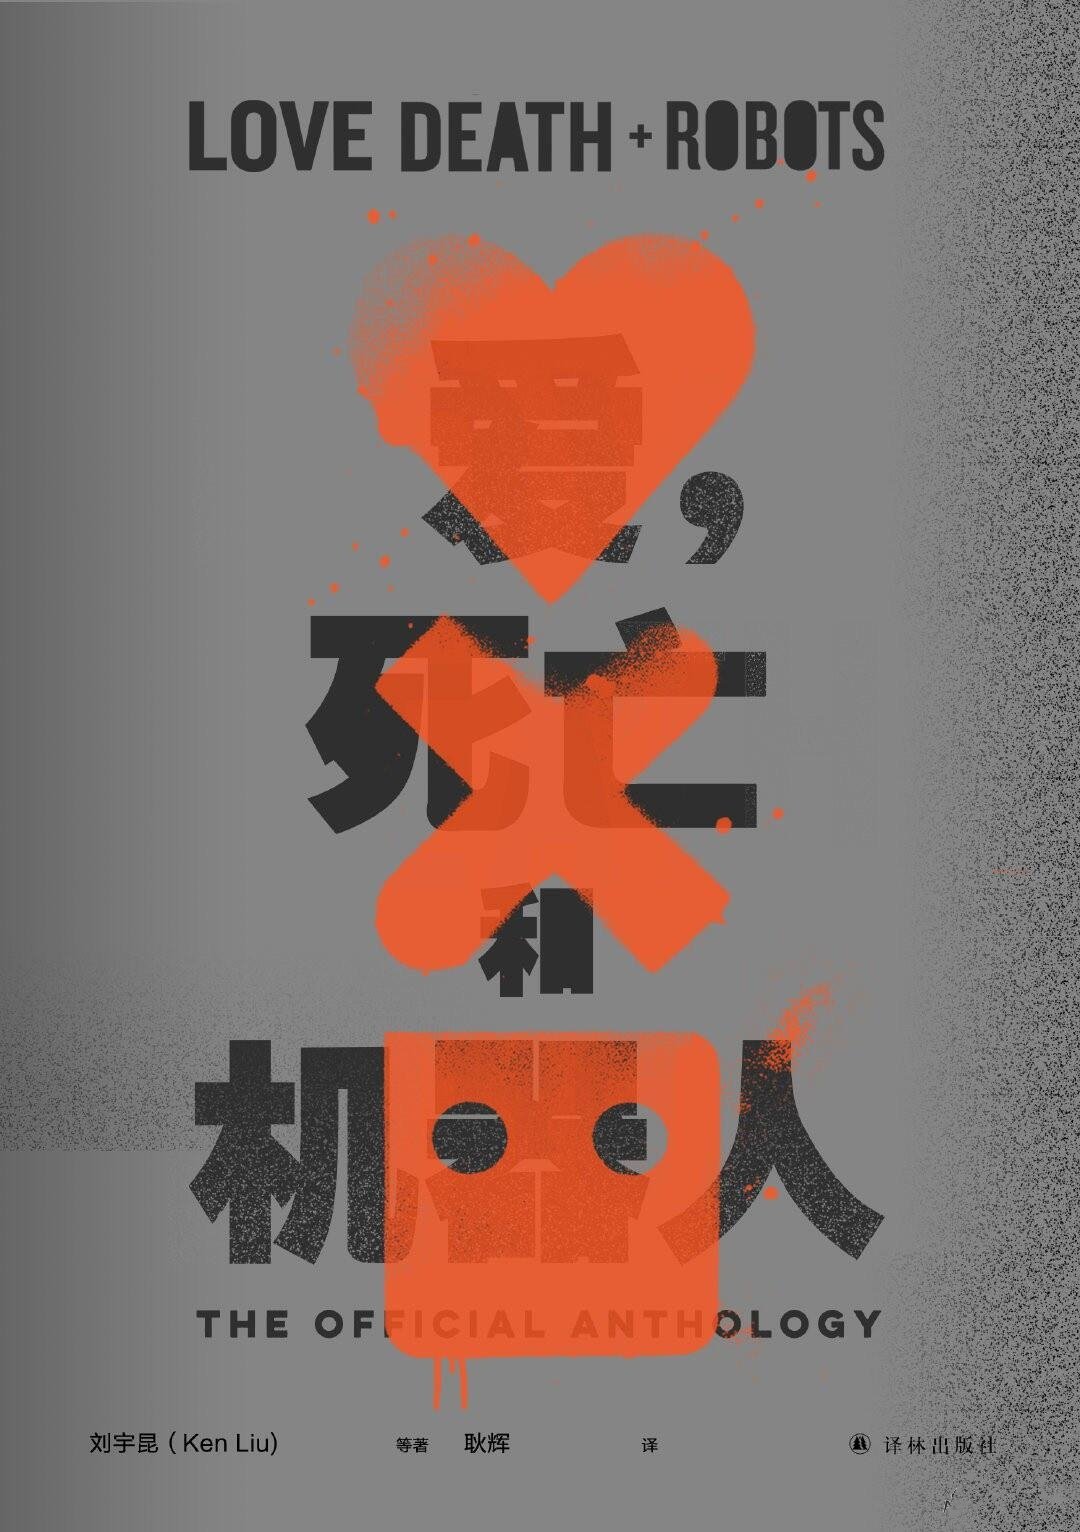 [动漫剧集]《爱，死亡机器人》1~3季+动画短片集1080P+在线分享+阿里云网盘分享[MKV/MP4]插图